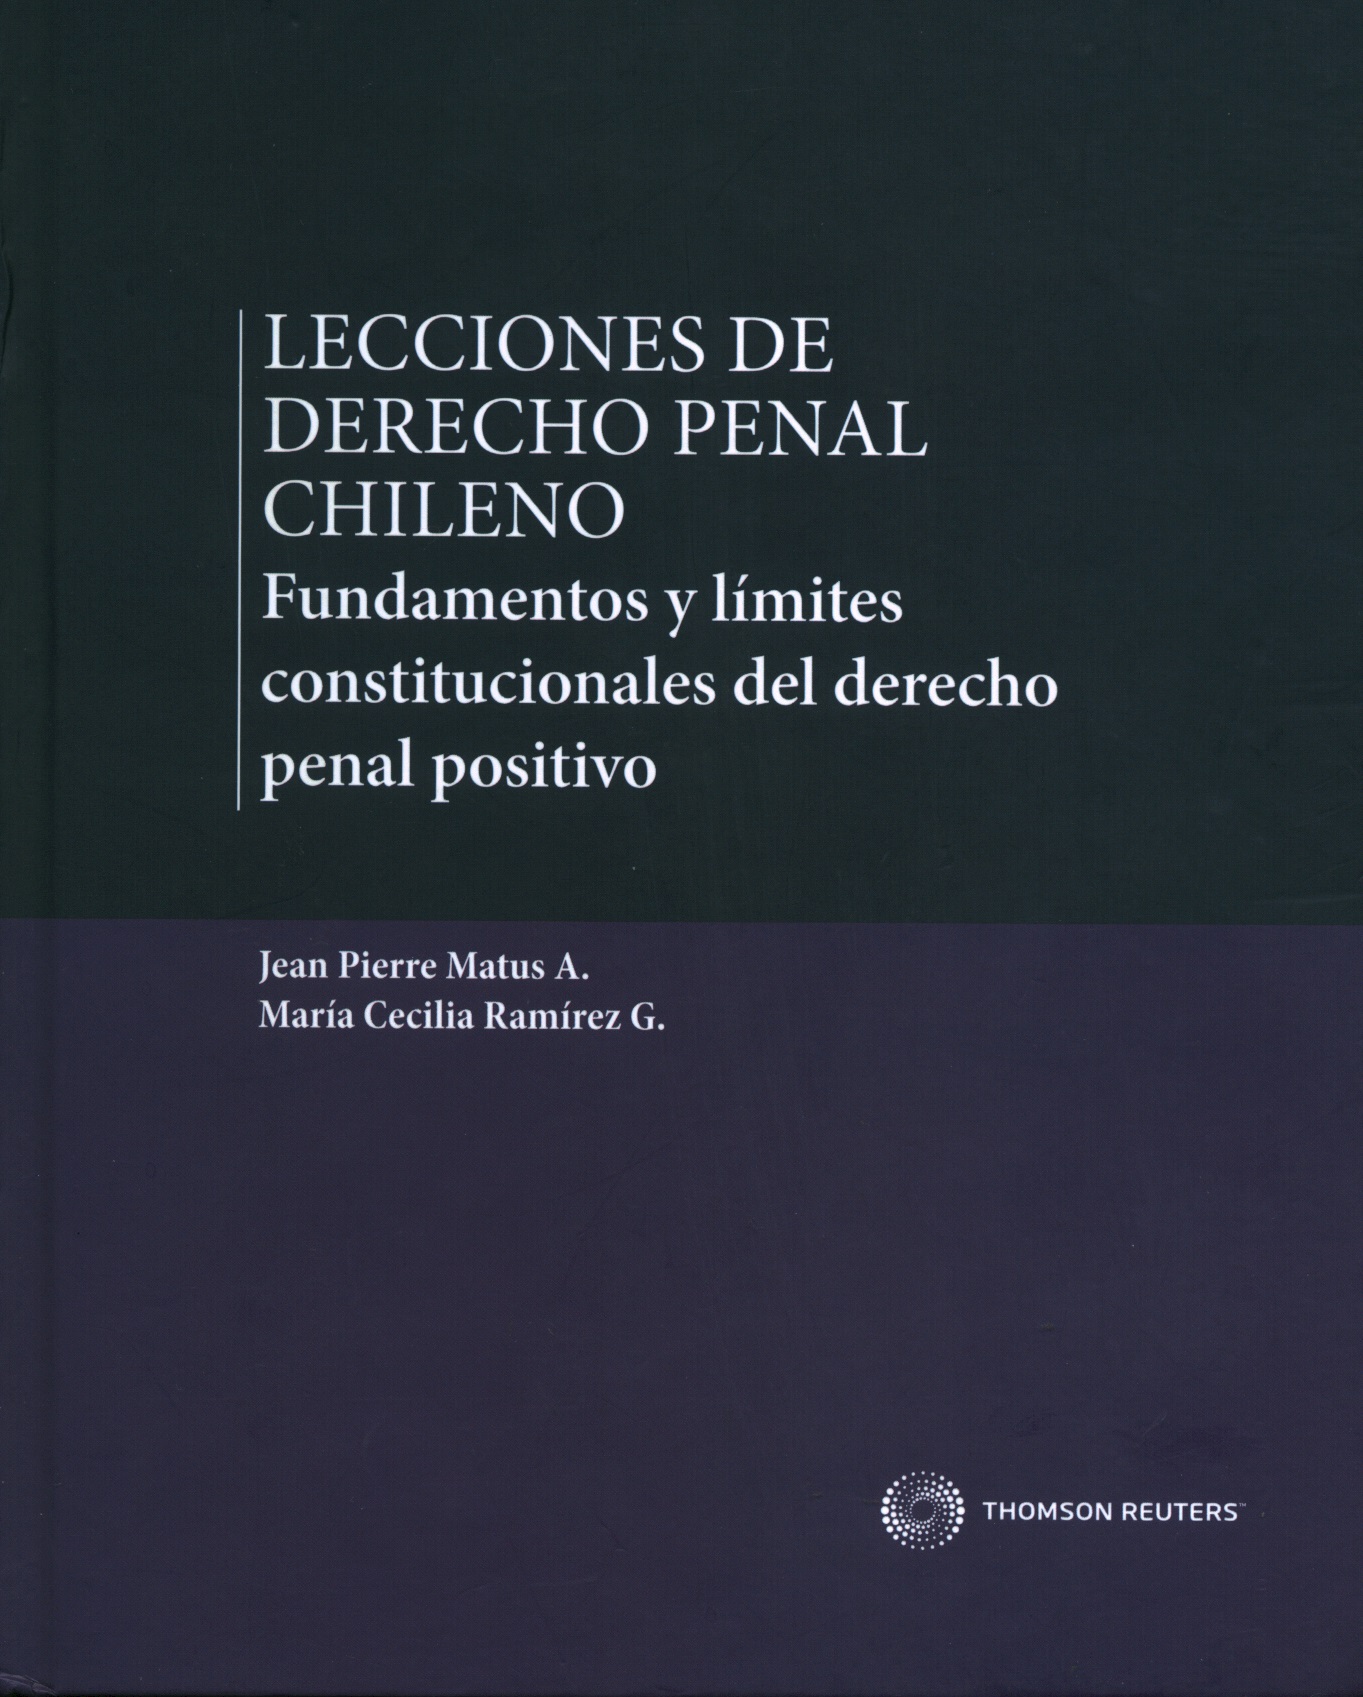 Lecciones de derecho penal chileno: fundamentos y límites constitucionales del derecho penal positivo